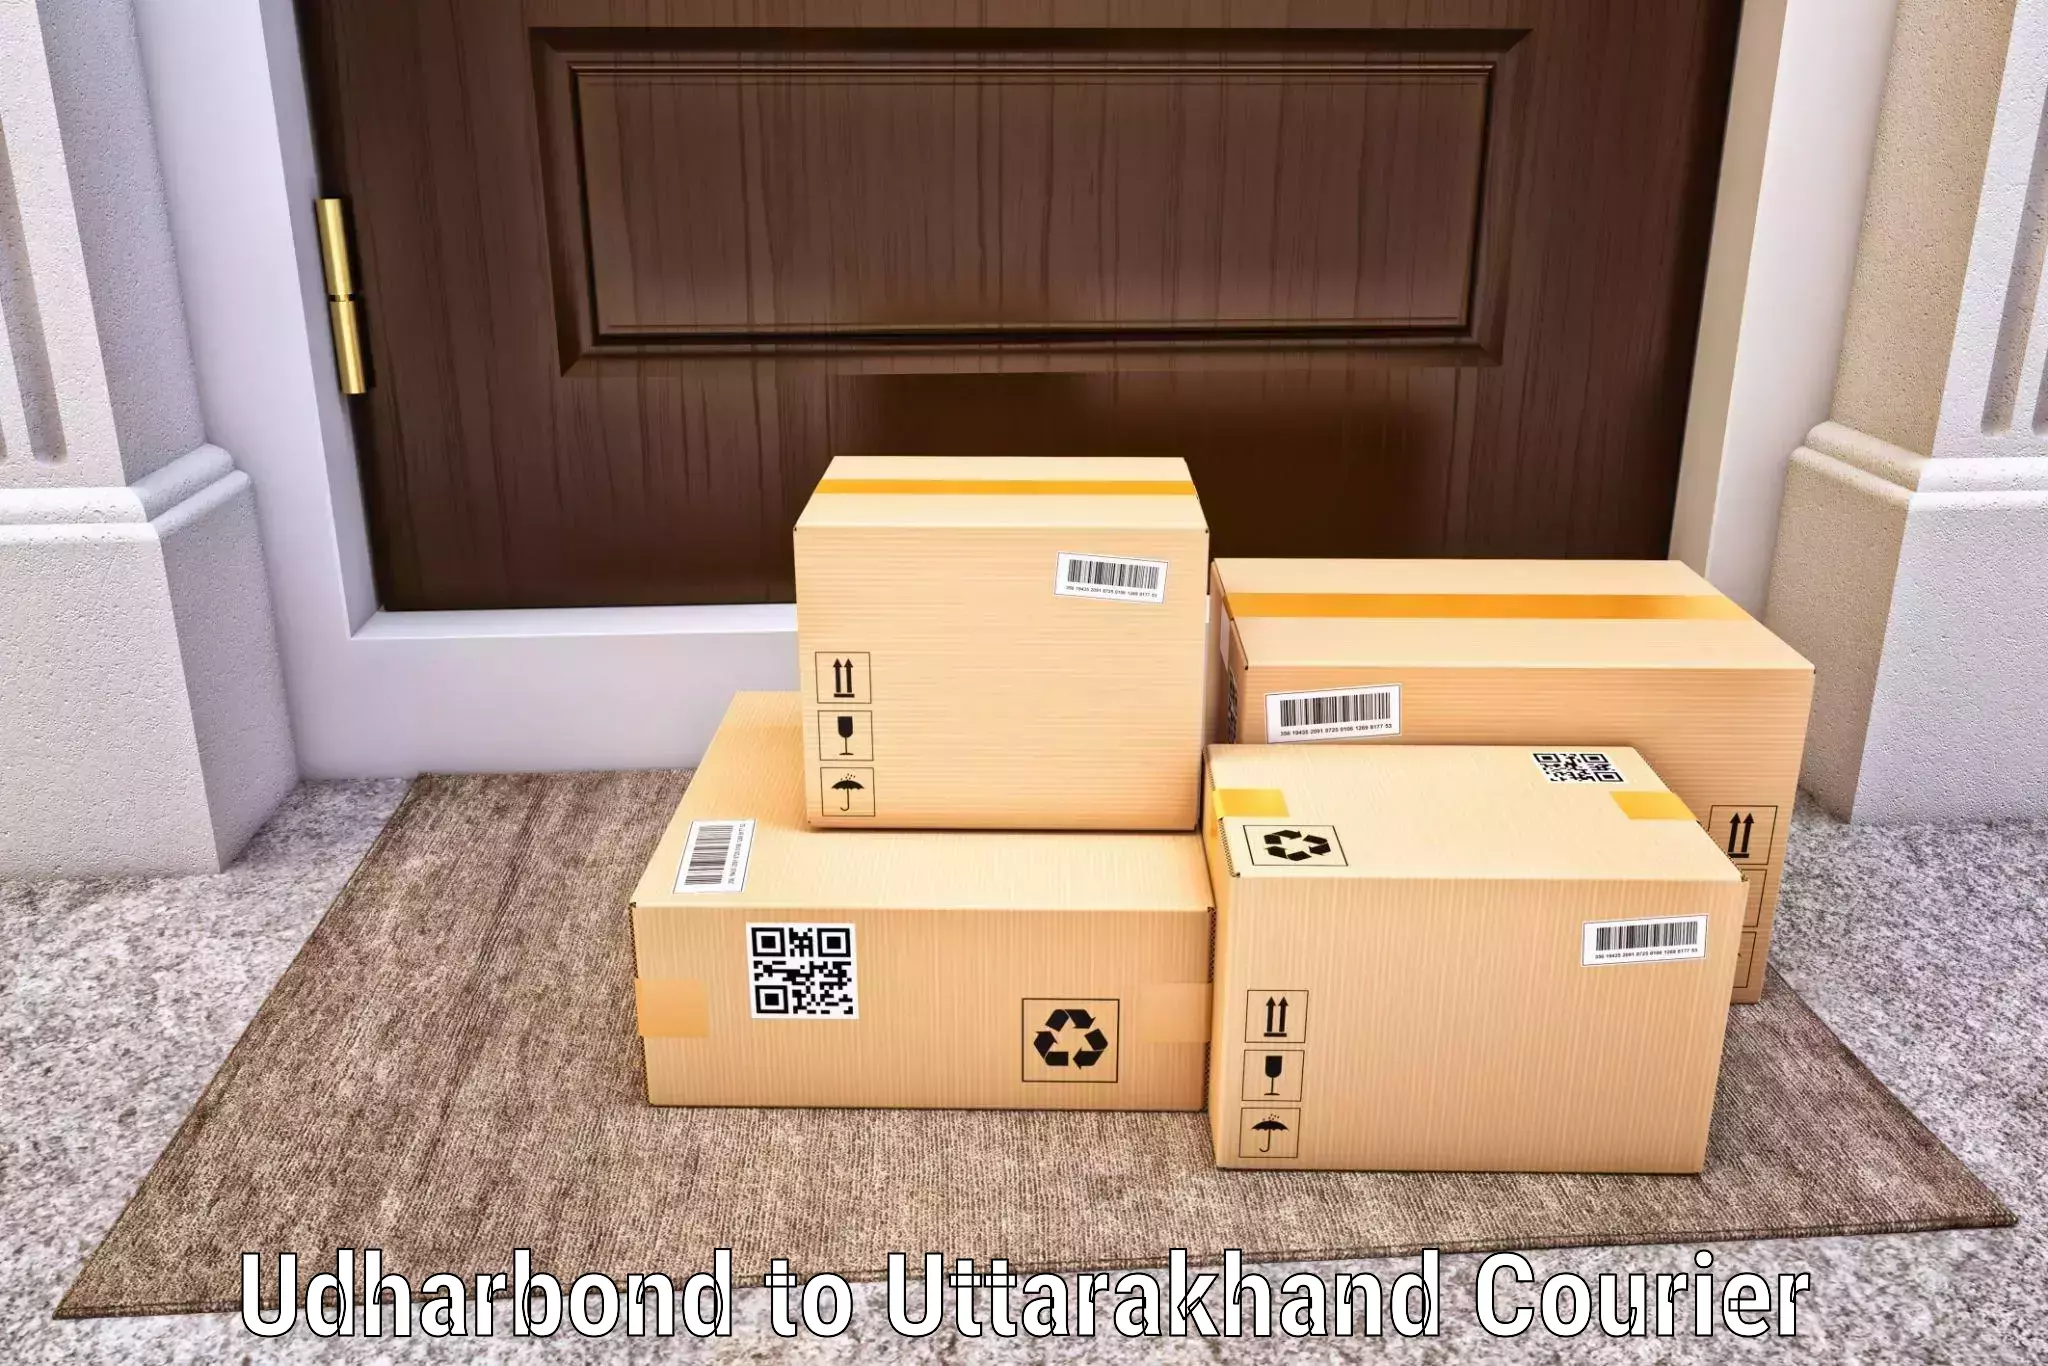 Global parcel delivery Udharbond to Someshwar